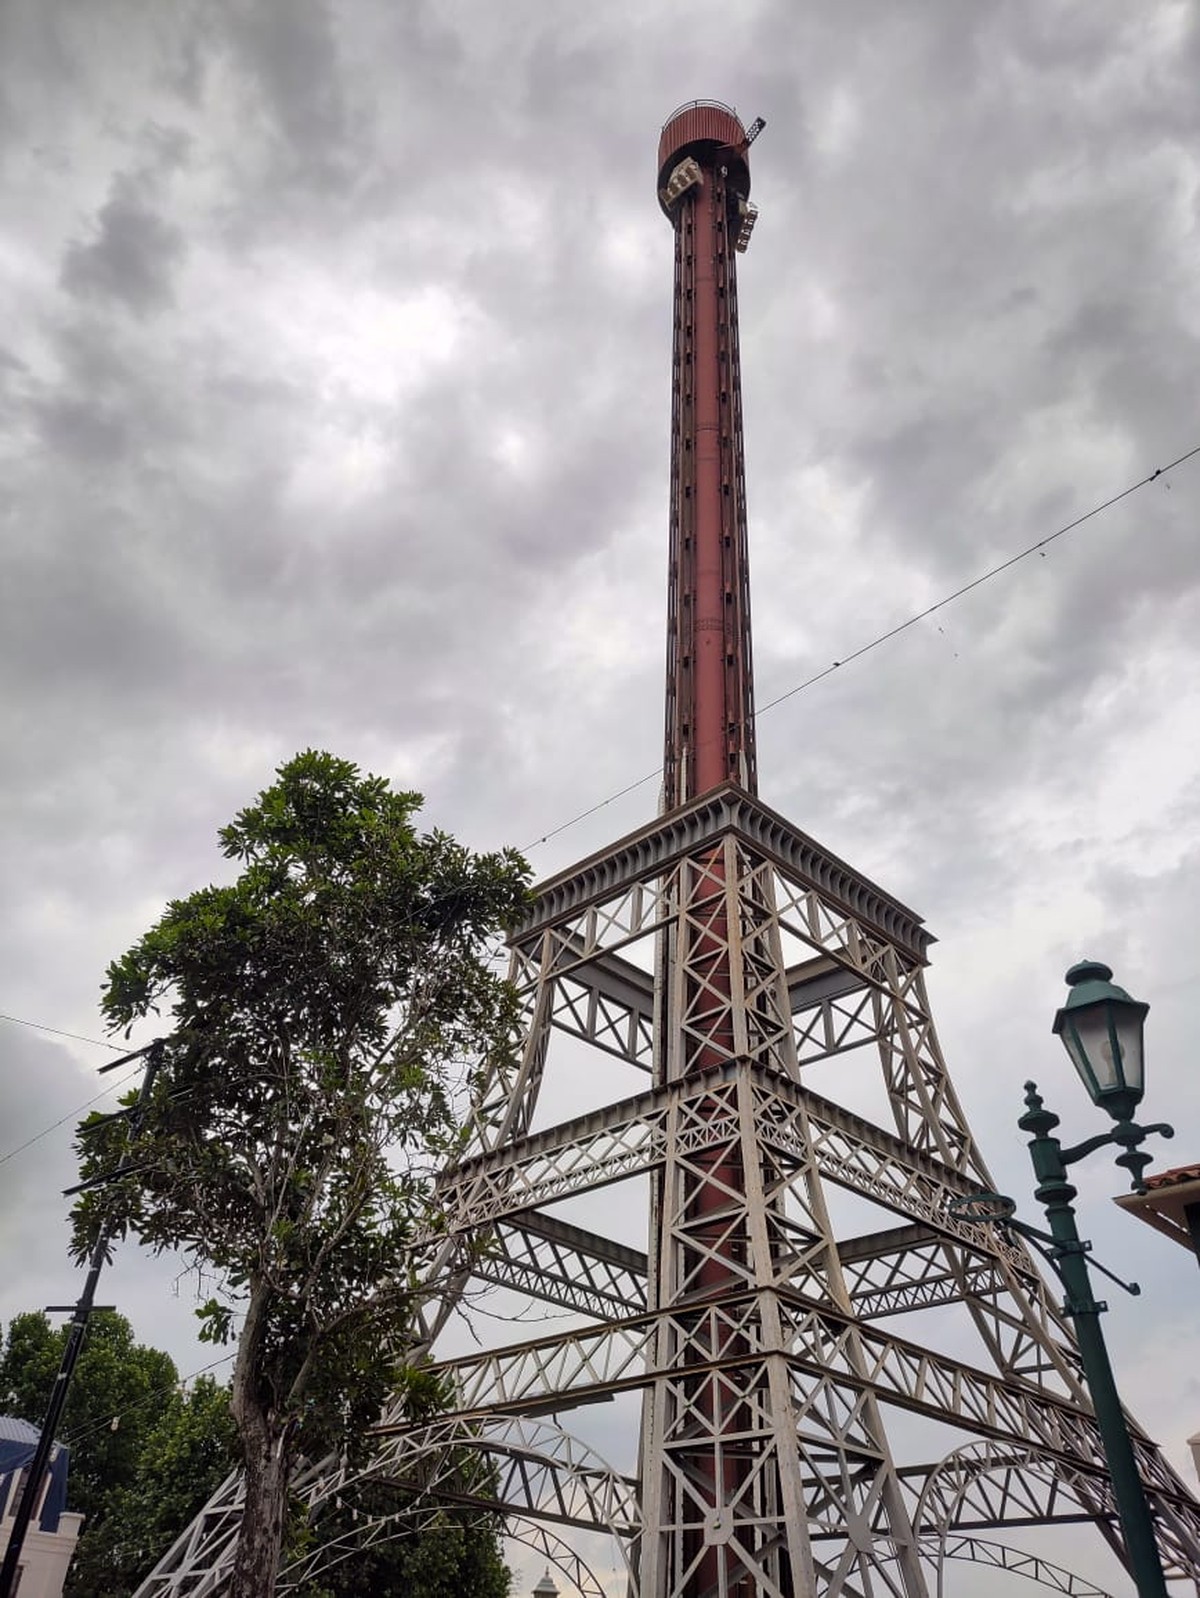 Parque de Diversões - Vamos lá! Seguindo num ritmo acelerado para a  reabertura da La Tour Eiffel, hoje o Hopi Hari ativou novos pontos de  iluminação na torre. Sobre a atração, em